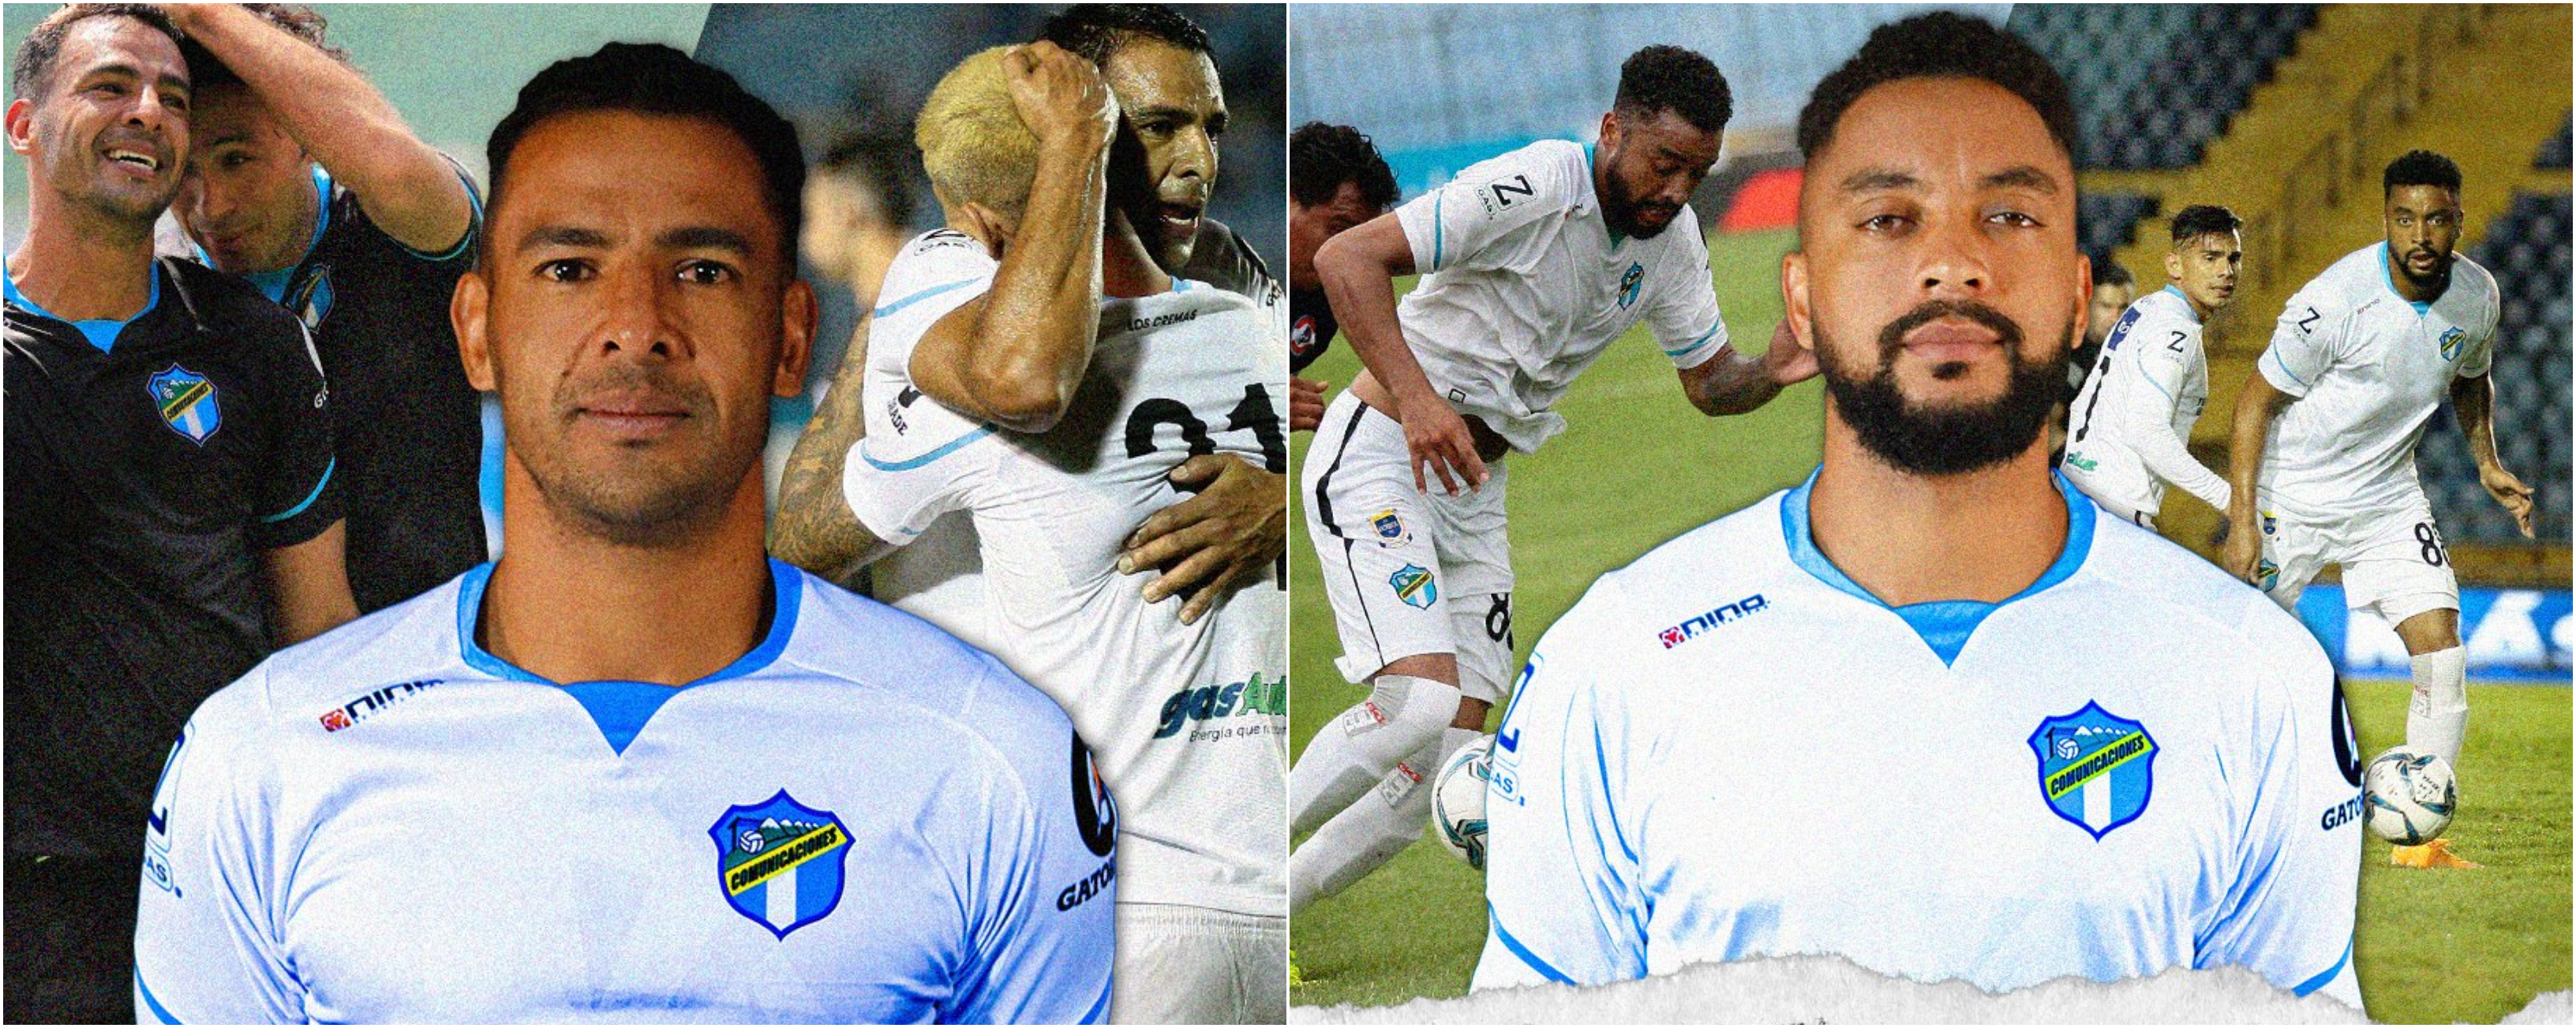 Los costarricenses Michael Umaña y Manfred Russell son las dos primeras bajas de Comunicaciones para el torneo Apertura 2021. Foto Prensa Libre: Club Comunicaciones.